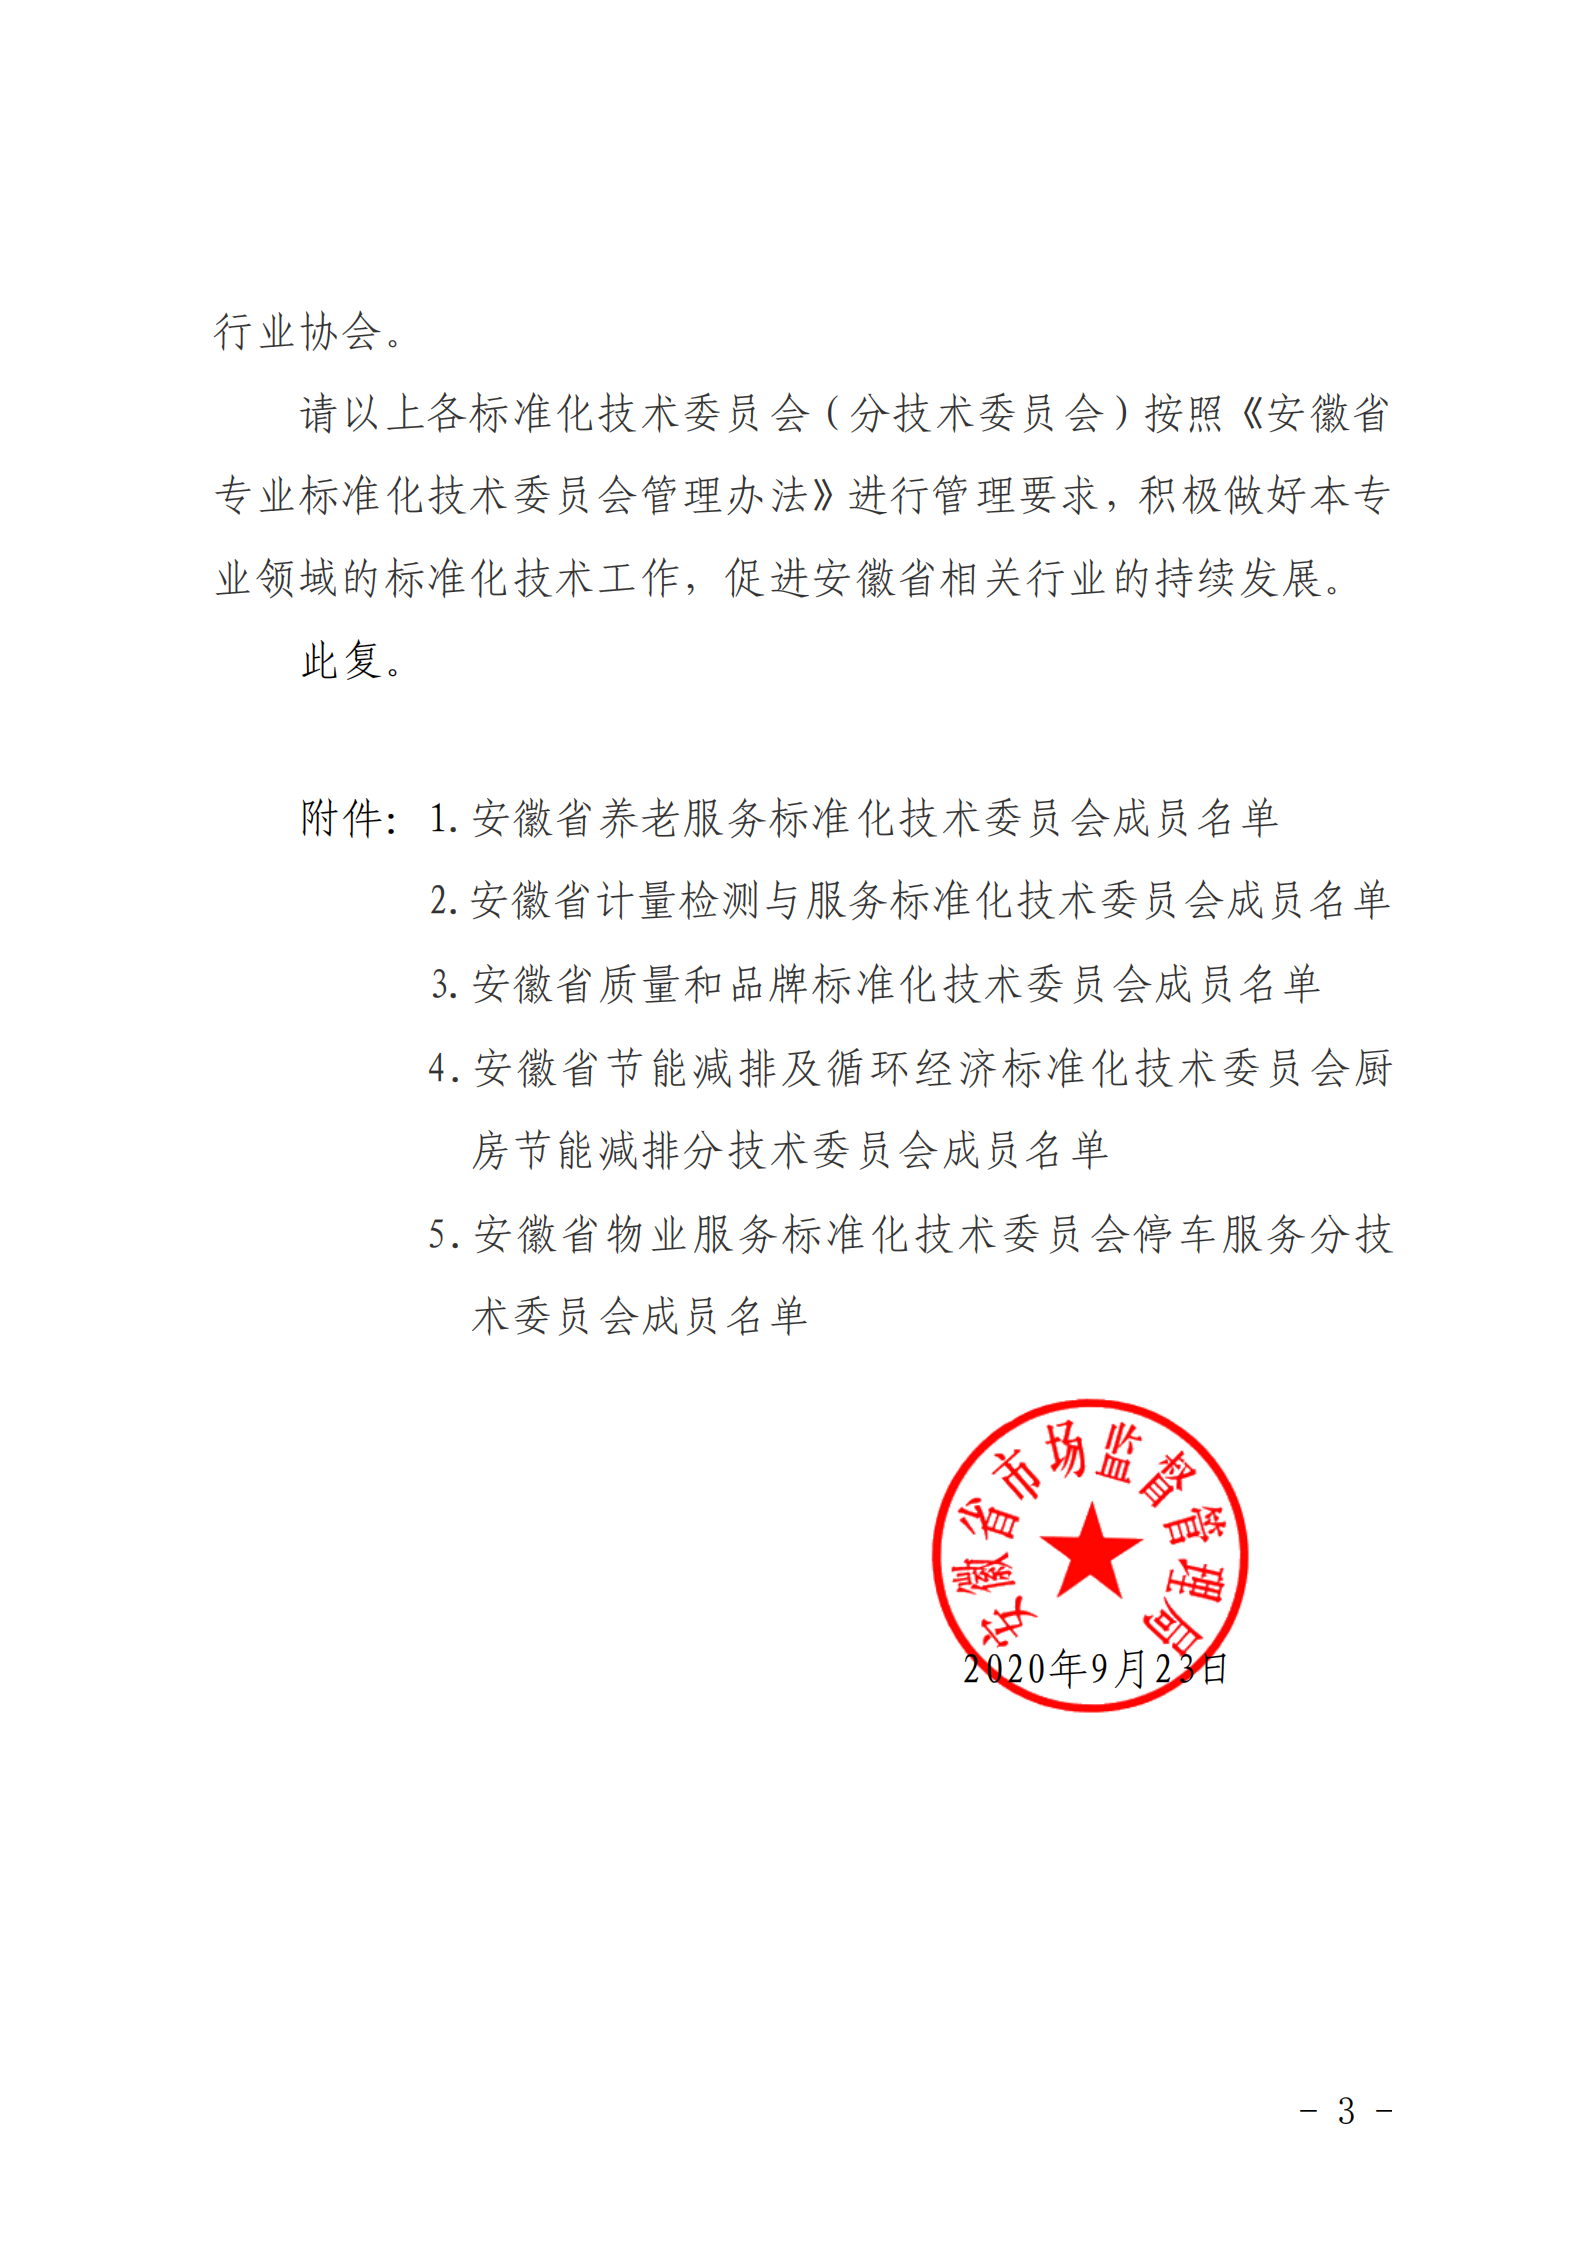 安徽省市场监督管理局关于同意成立安徽省养老服务等5家省级专业标准化技术委员会（分技术委员会）的批复(图3)